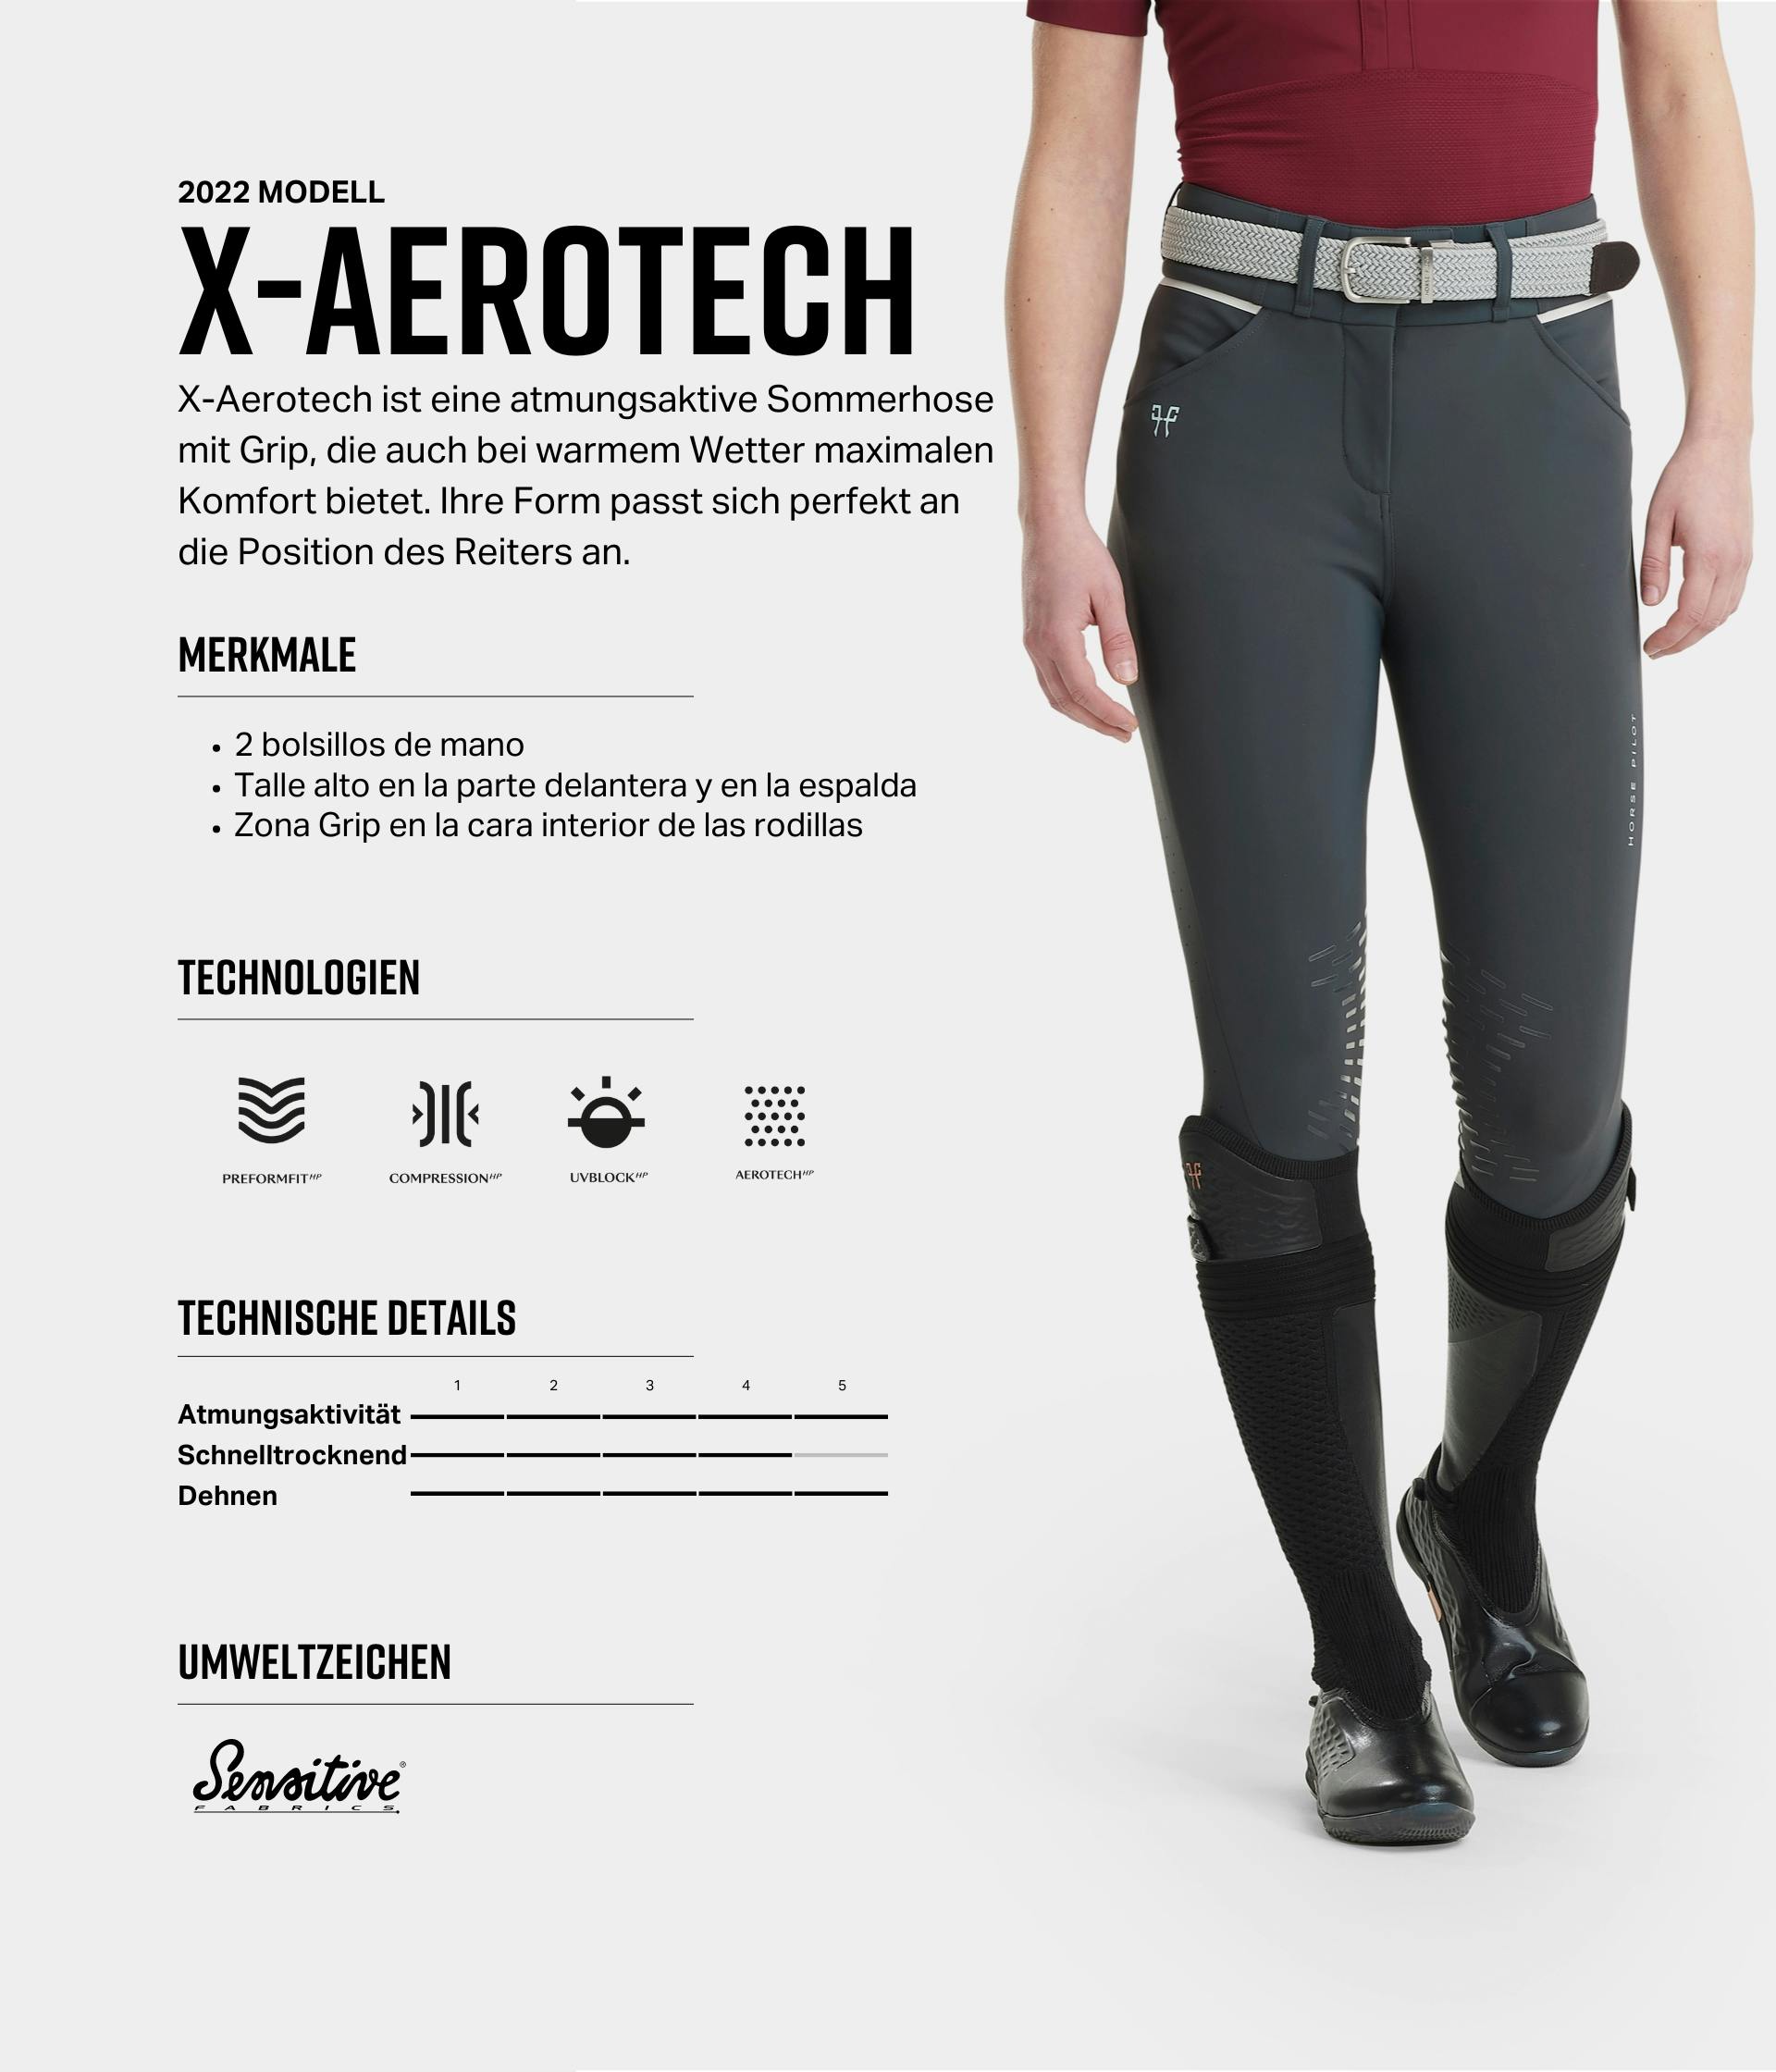 X-Aerotech Femme Horse Pilot